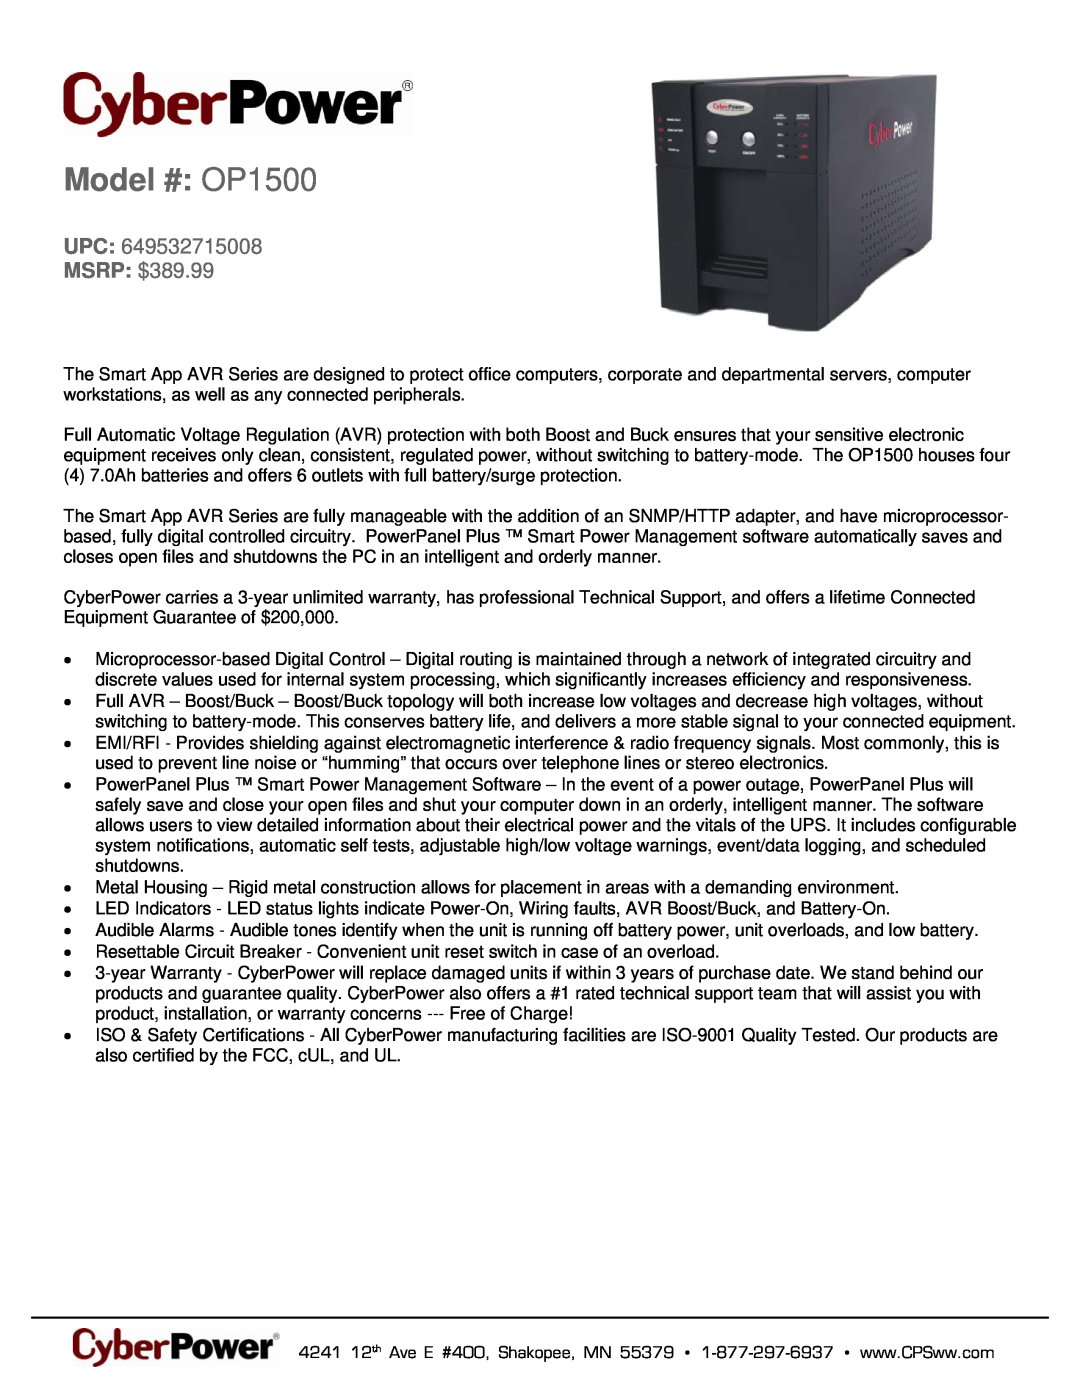 CyberPower Systems 649532715008 warranty Model # OP1500, UPC MSRP $389.99 